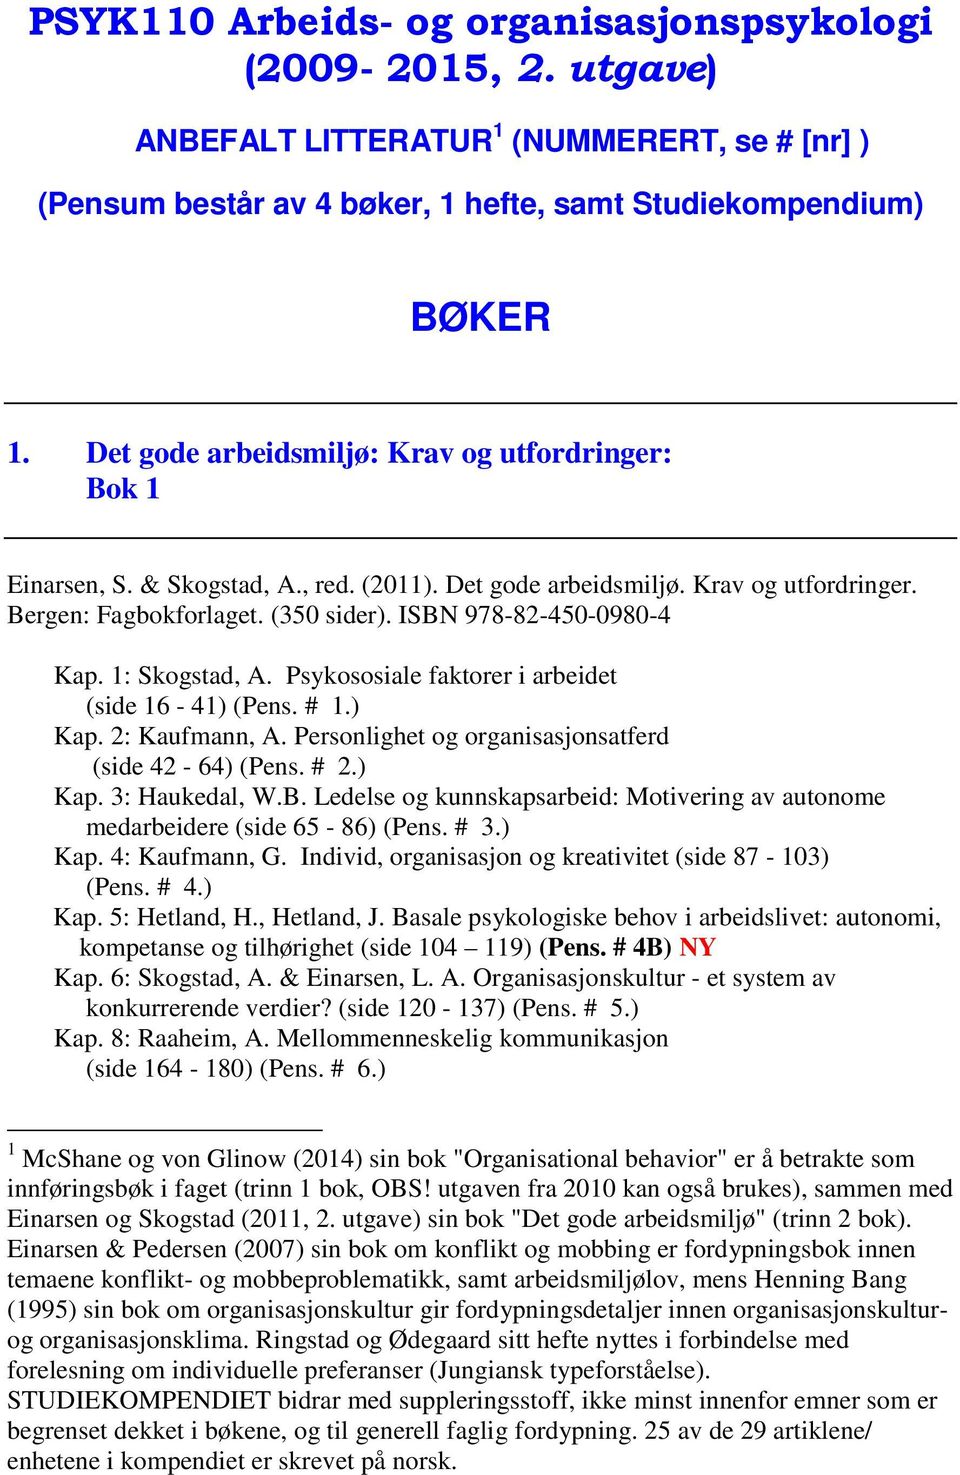 ISBN 978-82-450-0980-4 Kap. 1: Skogstad, A. Psykososiale faktorer i arbeidet (side 16-41) (Pens. # 1.) Kap. 2: Kaufmann, A. Personlighet og organisasjonsatferd (side 42-64) (Pens. # 2.) Kap. 3: Haukedal, W.